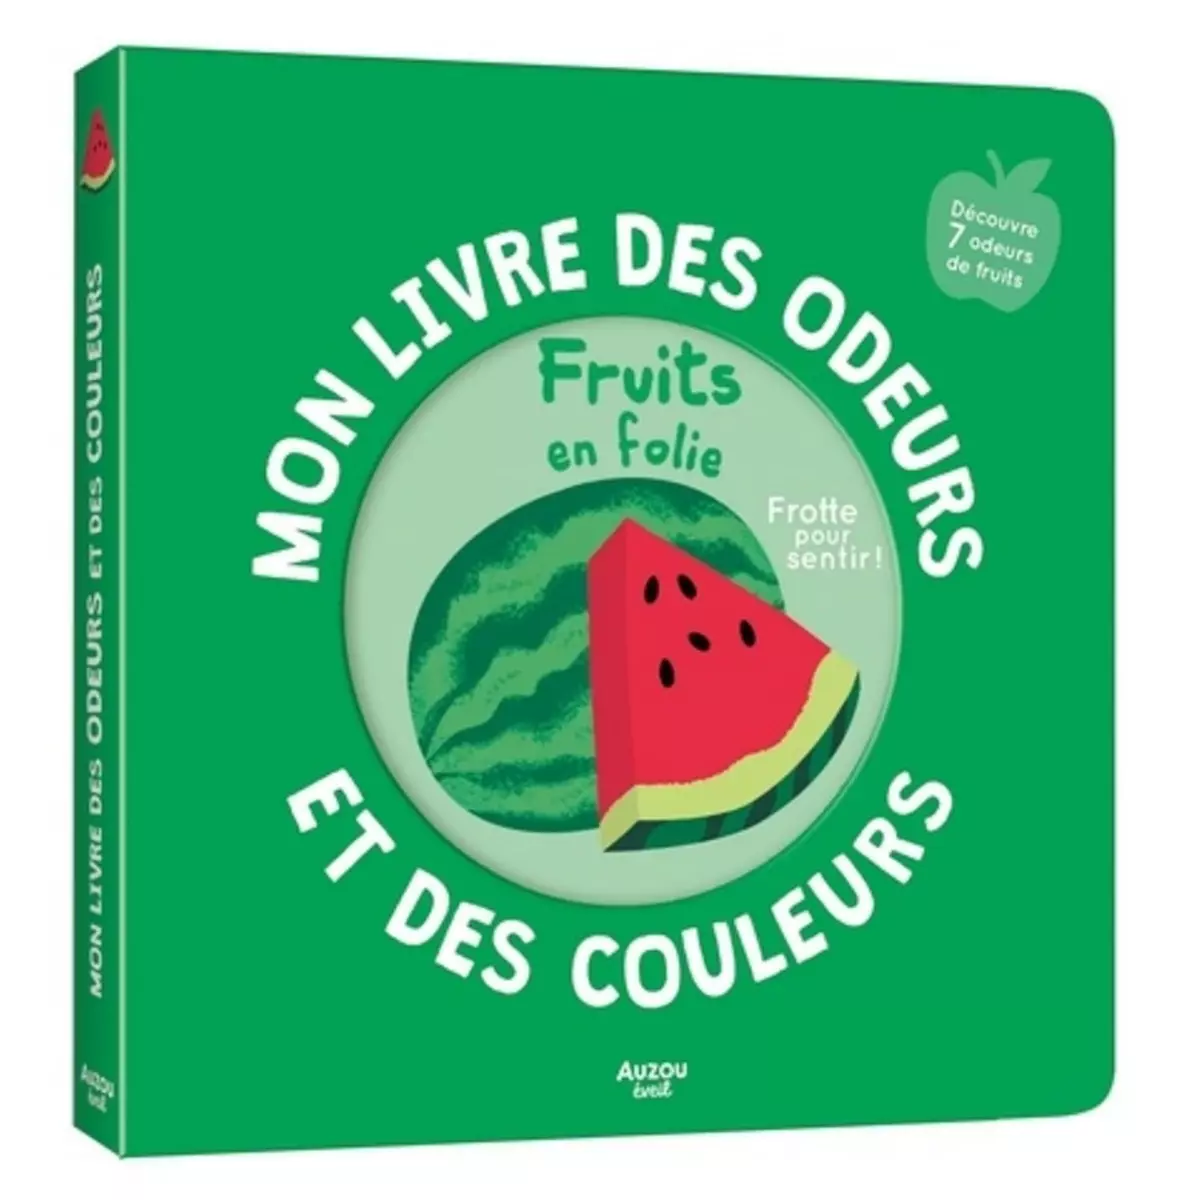  FRUITS EN FOLIE. DECOUVRE 7 ODEURS DE FRUITS, Mr Iwi